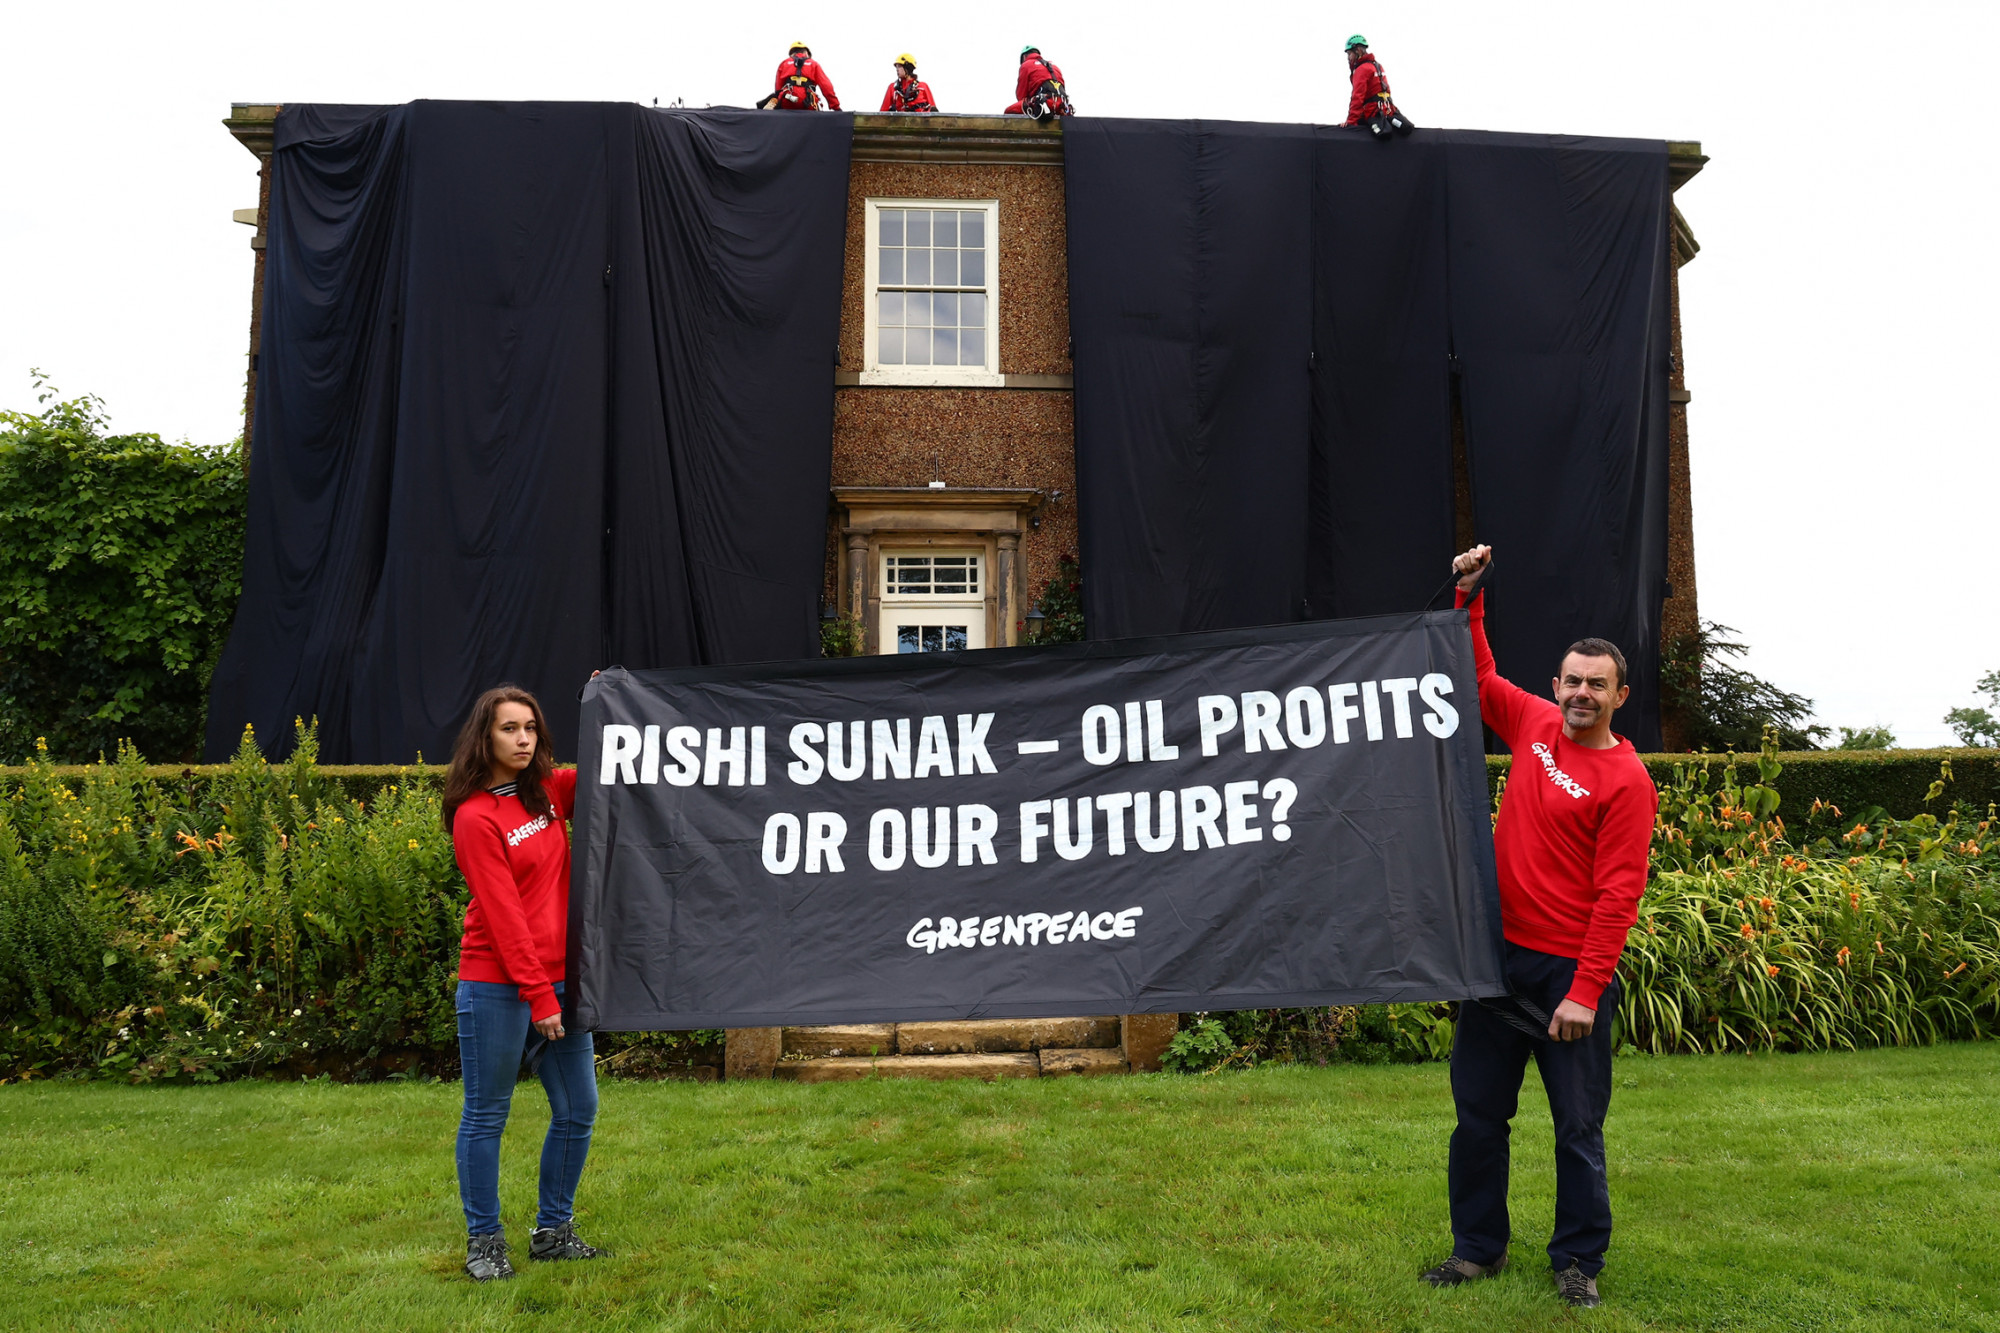 Felmásztak Rishi Sunak házának tetejére a Greenpeace aktivistái, hogy olajfekete drapériával takarhassák le